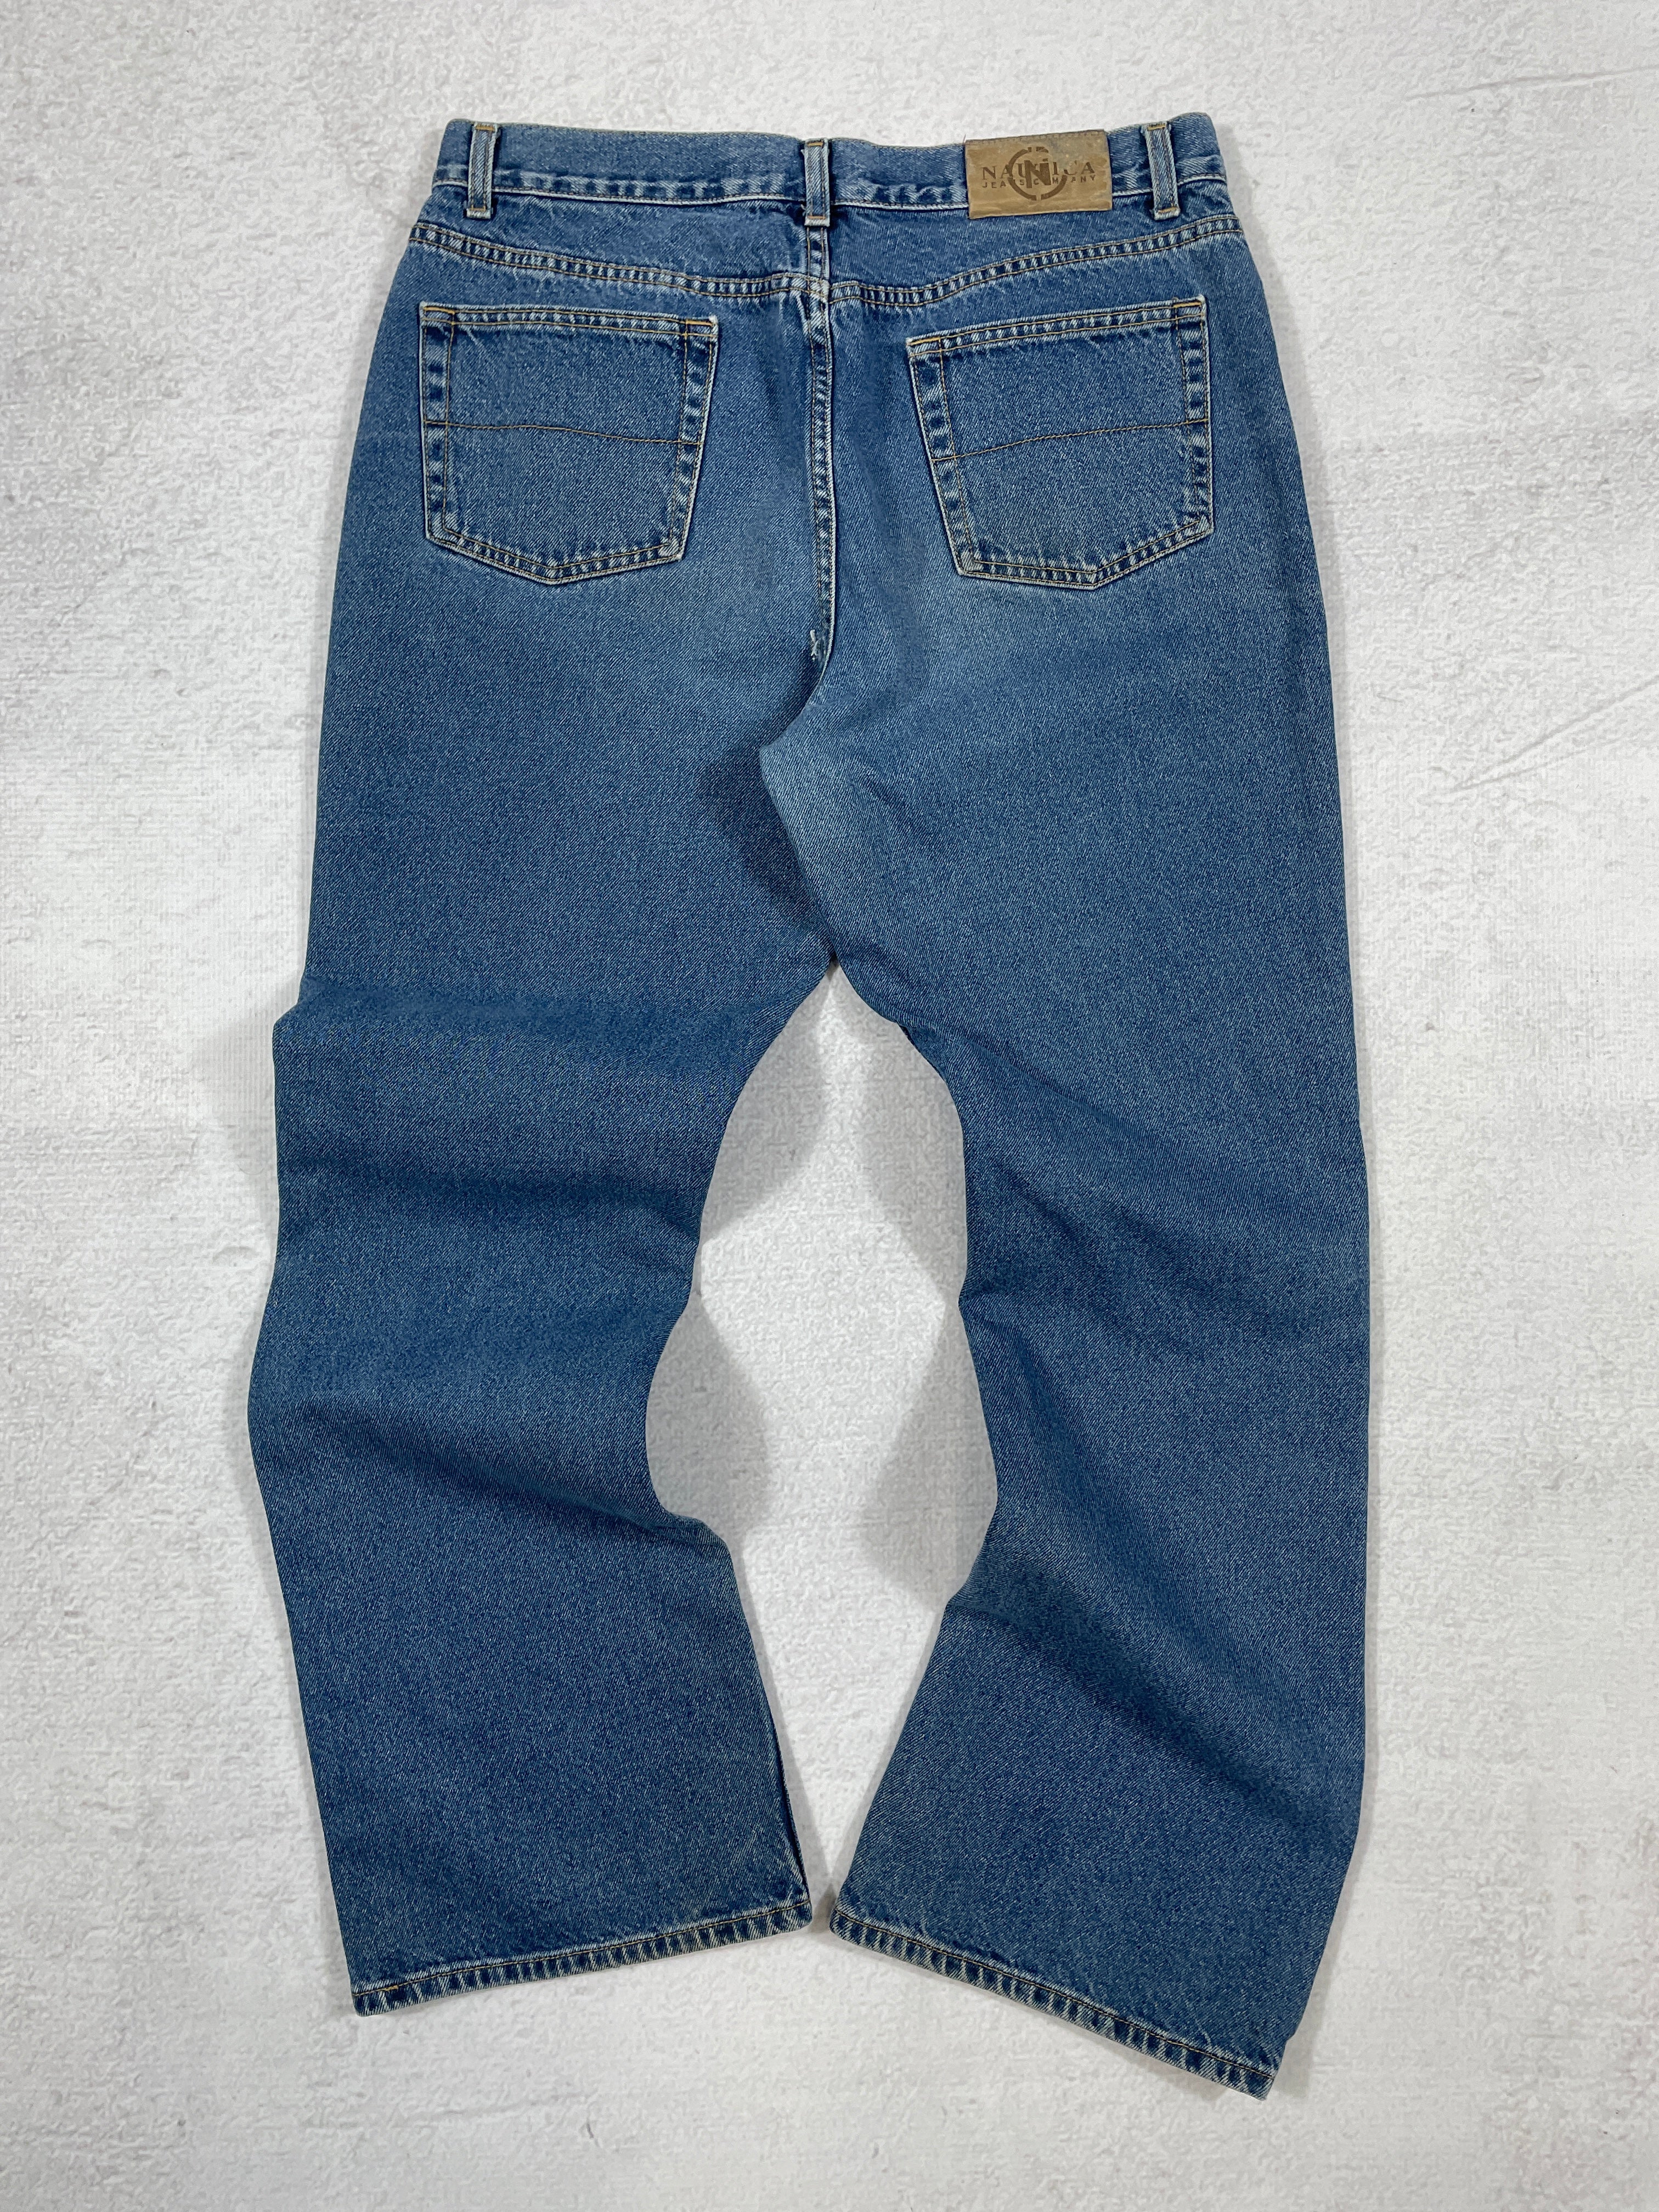 Vintage Nautica Jeans - Women's 32Wx32L